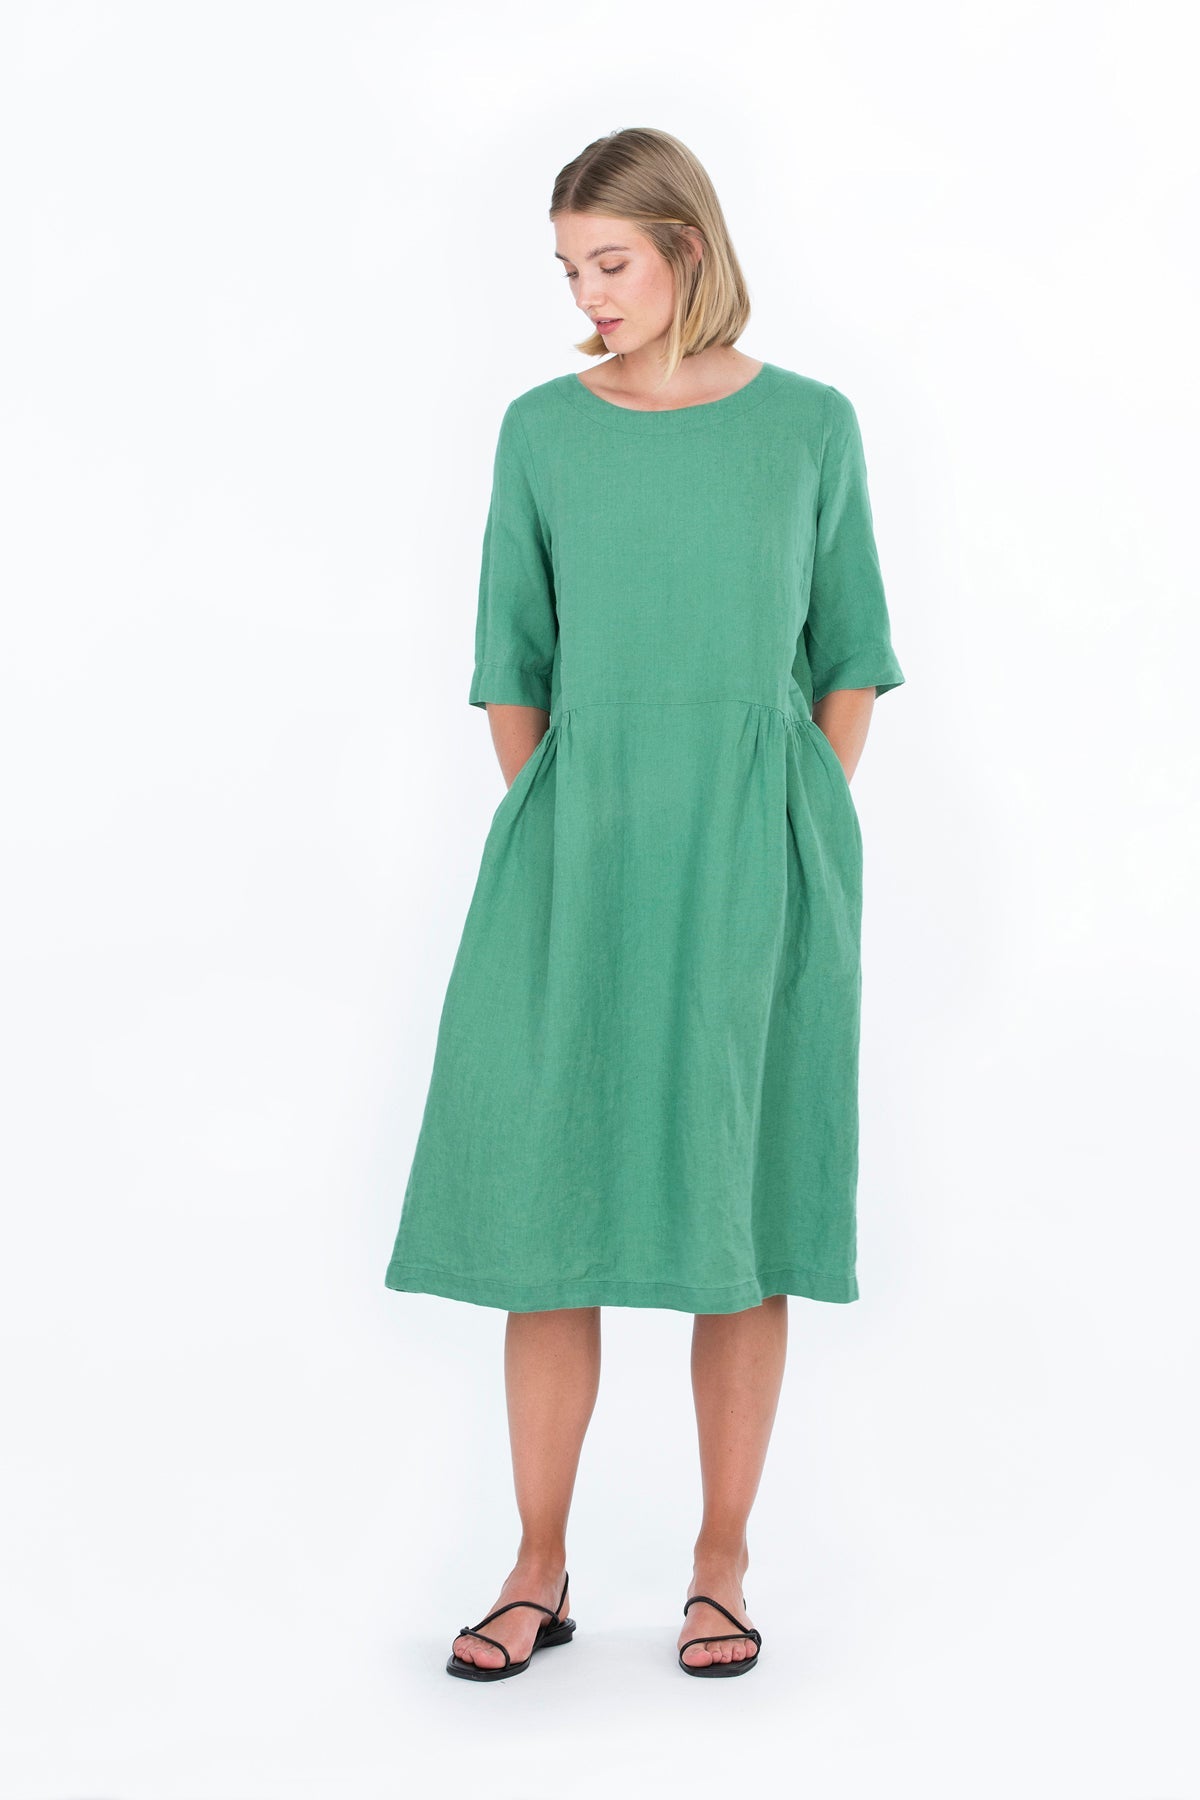 SARASTUS dress green